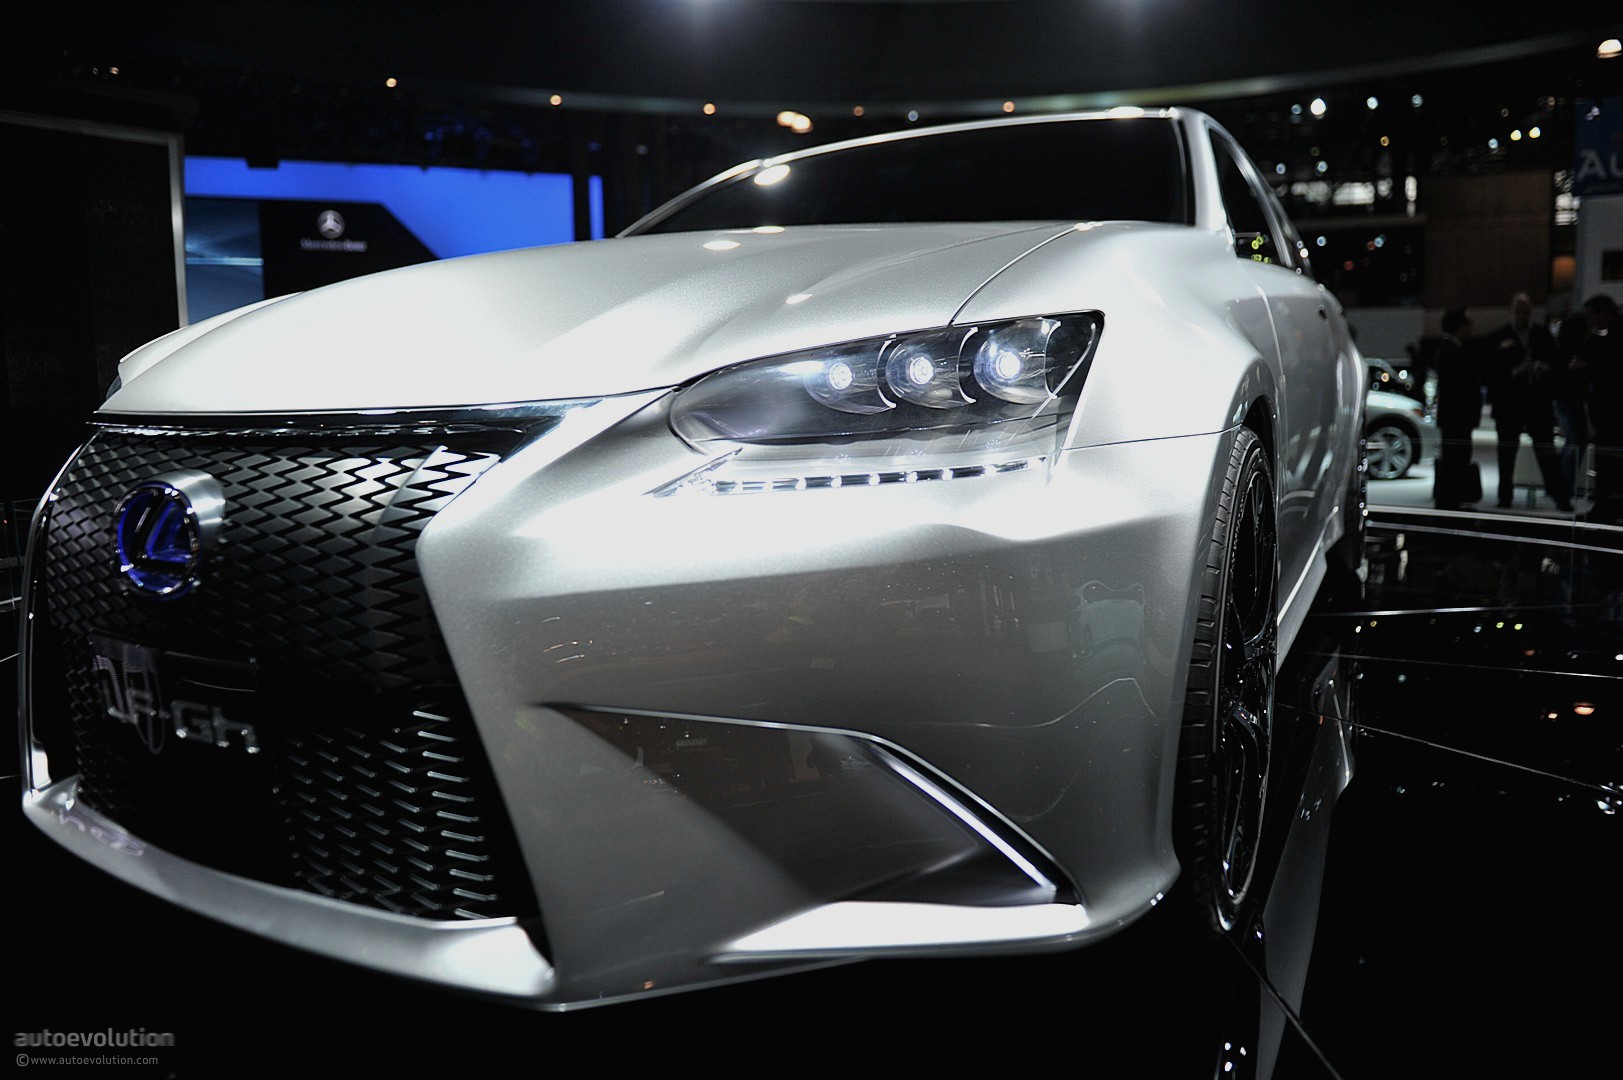 NYIAS 2011: Lexus LF-Gh Concept [Live Photos] - autoevolution1623 x 1080